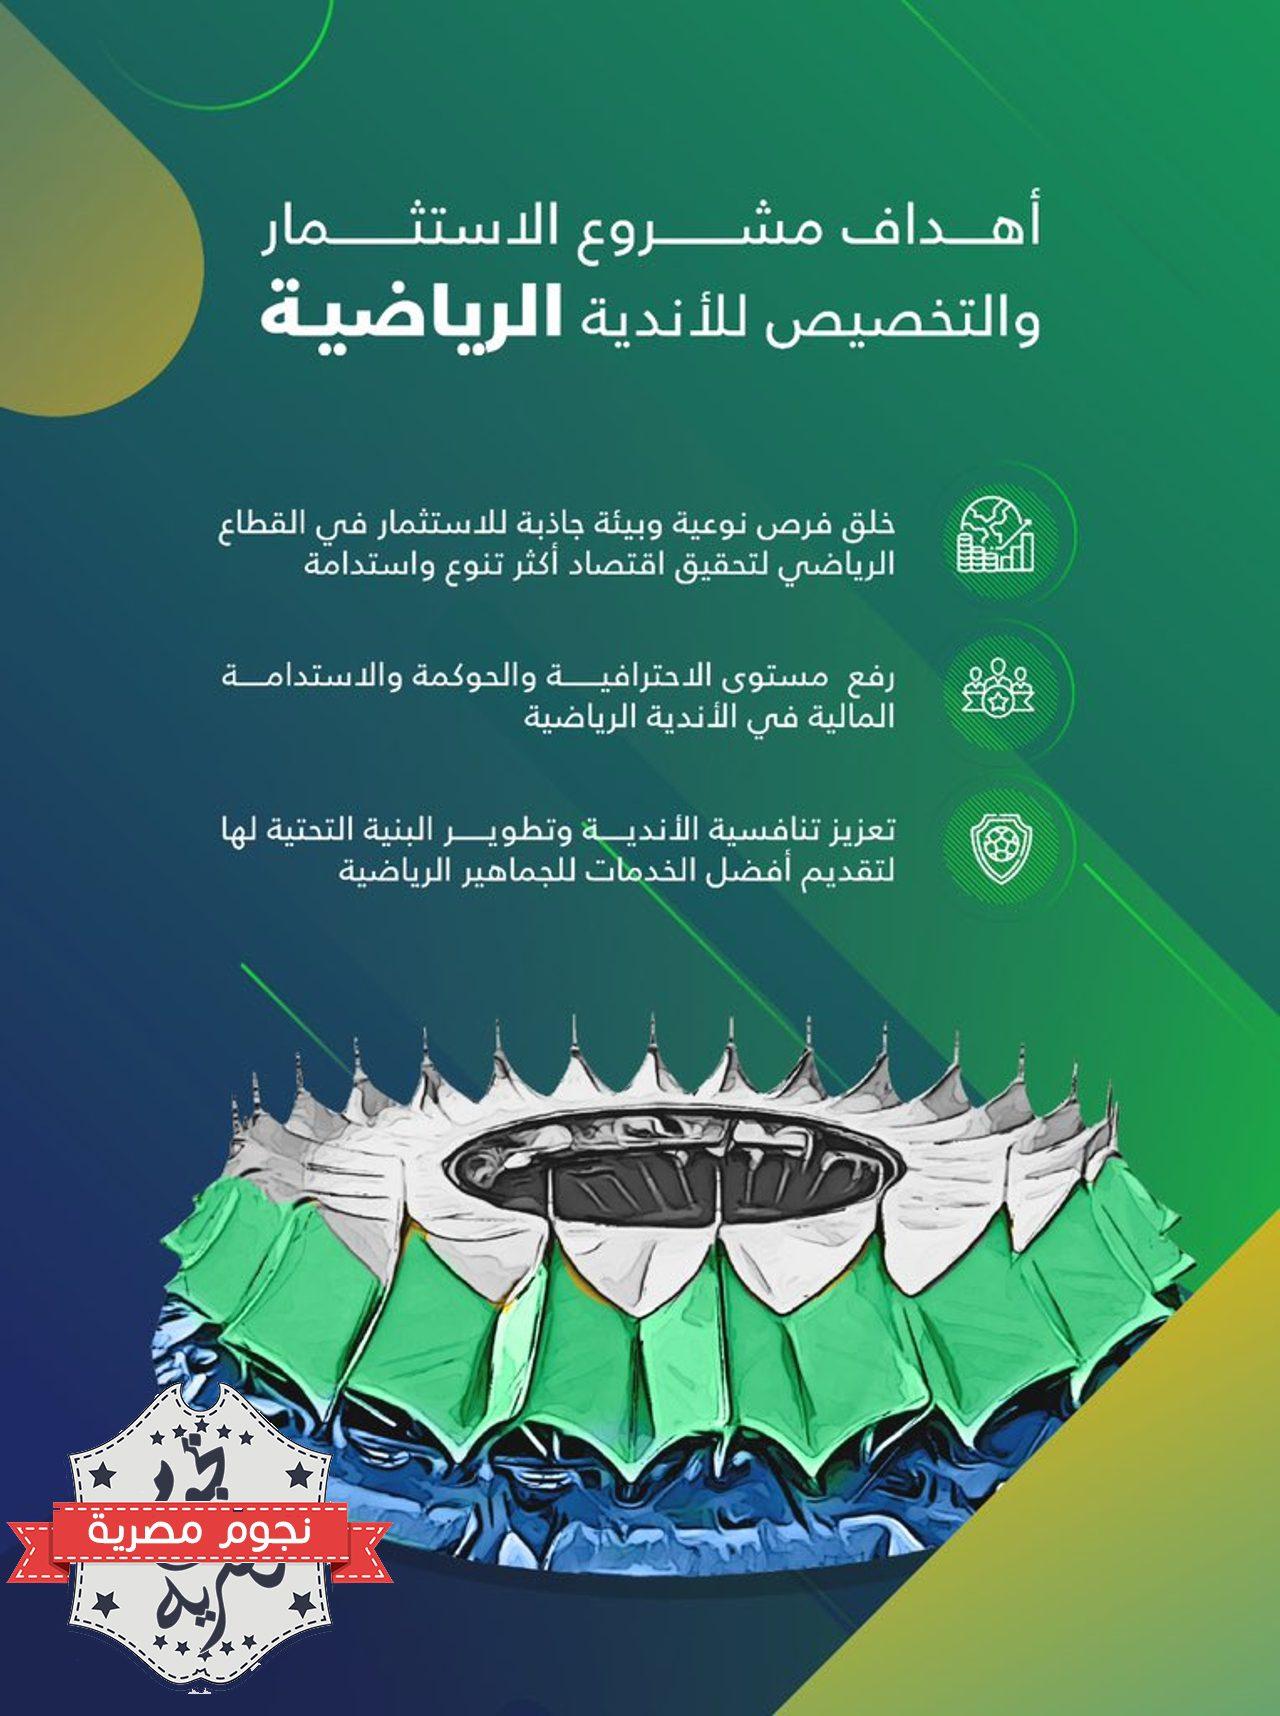 أهداف مشروع الاستثمار الجديد في الأندية الرياضية السعودية